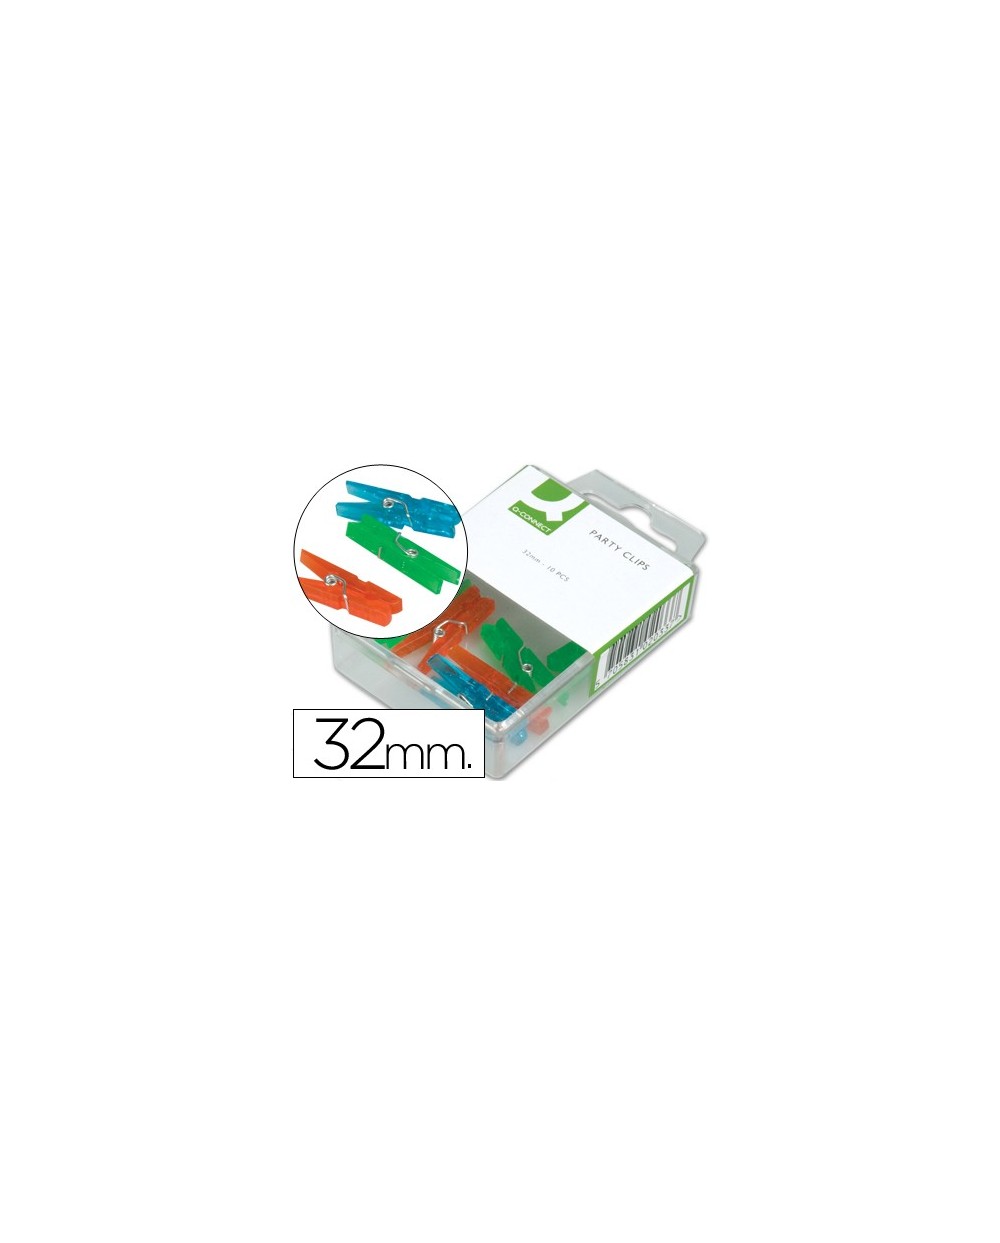 Pinza fantasia q connect 32 mm caja de 10 unidades colores surtidos